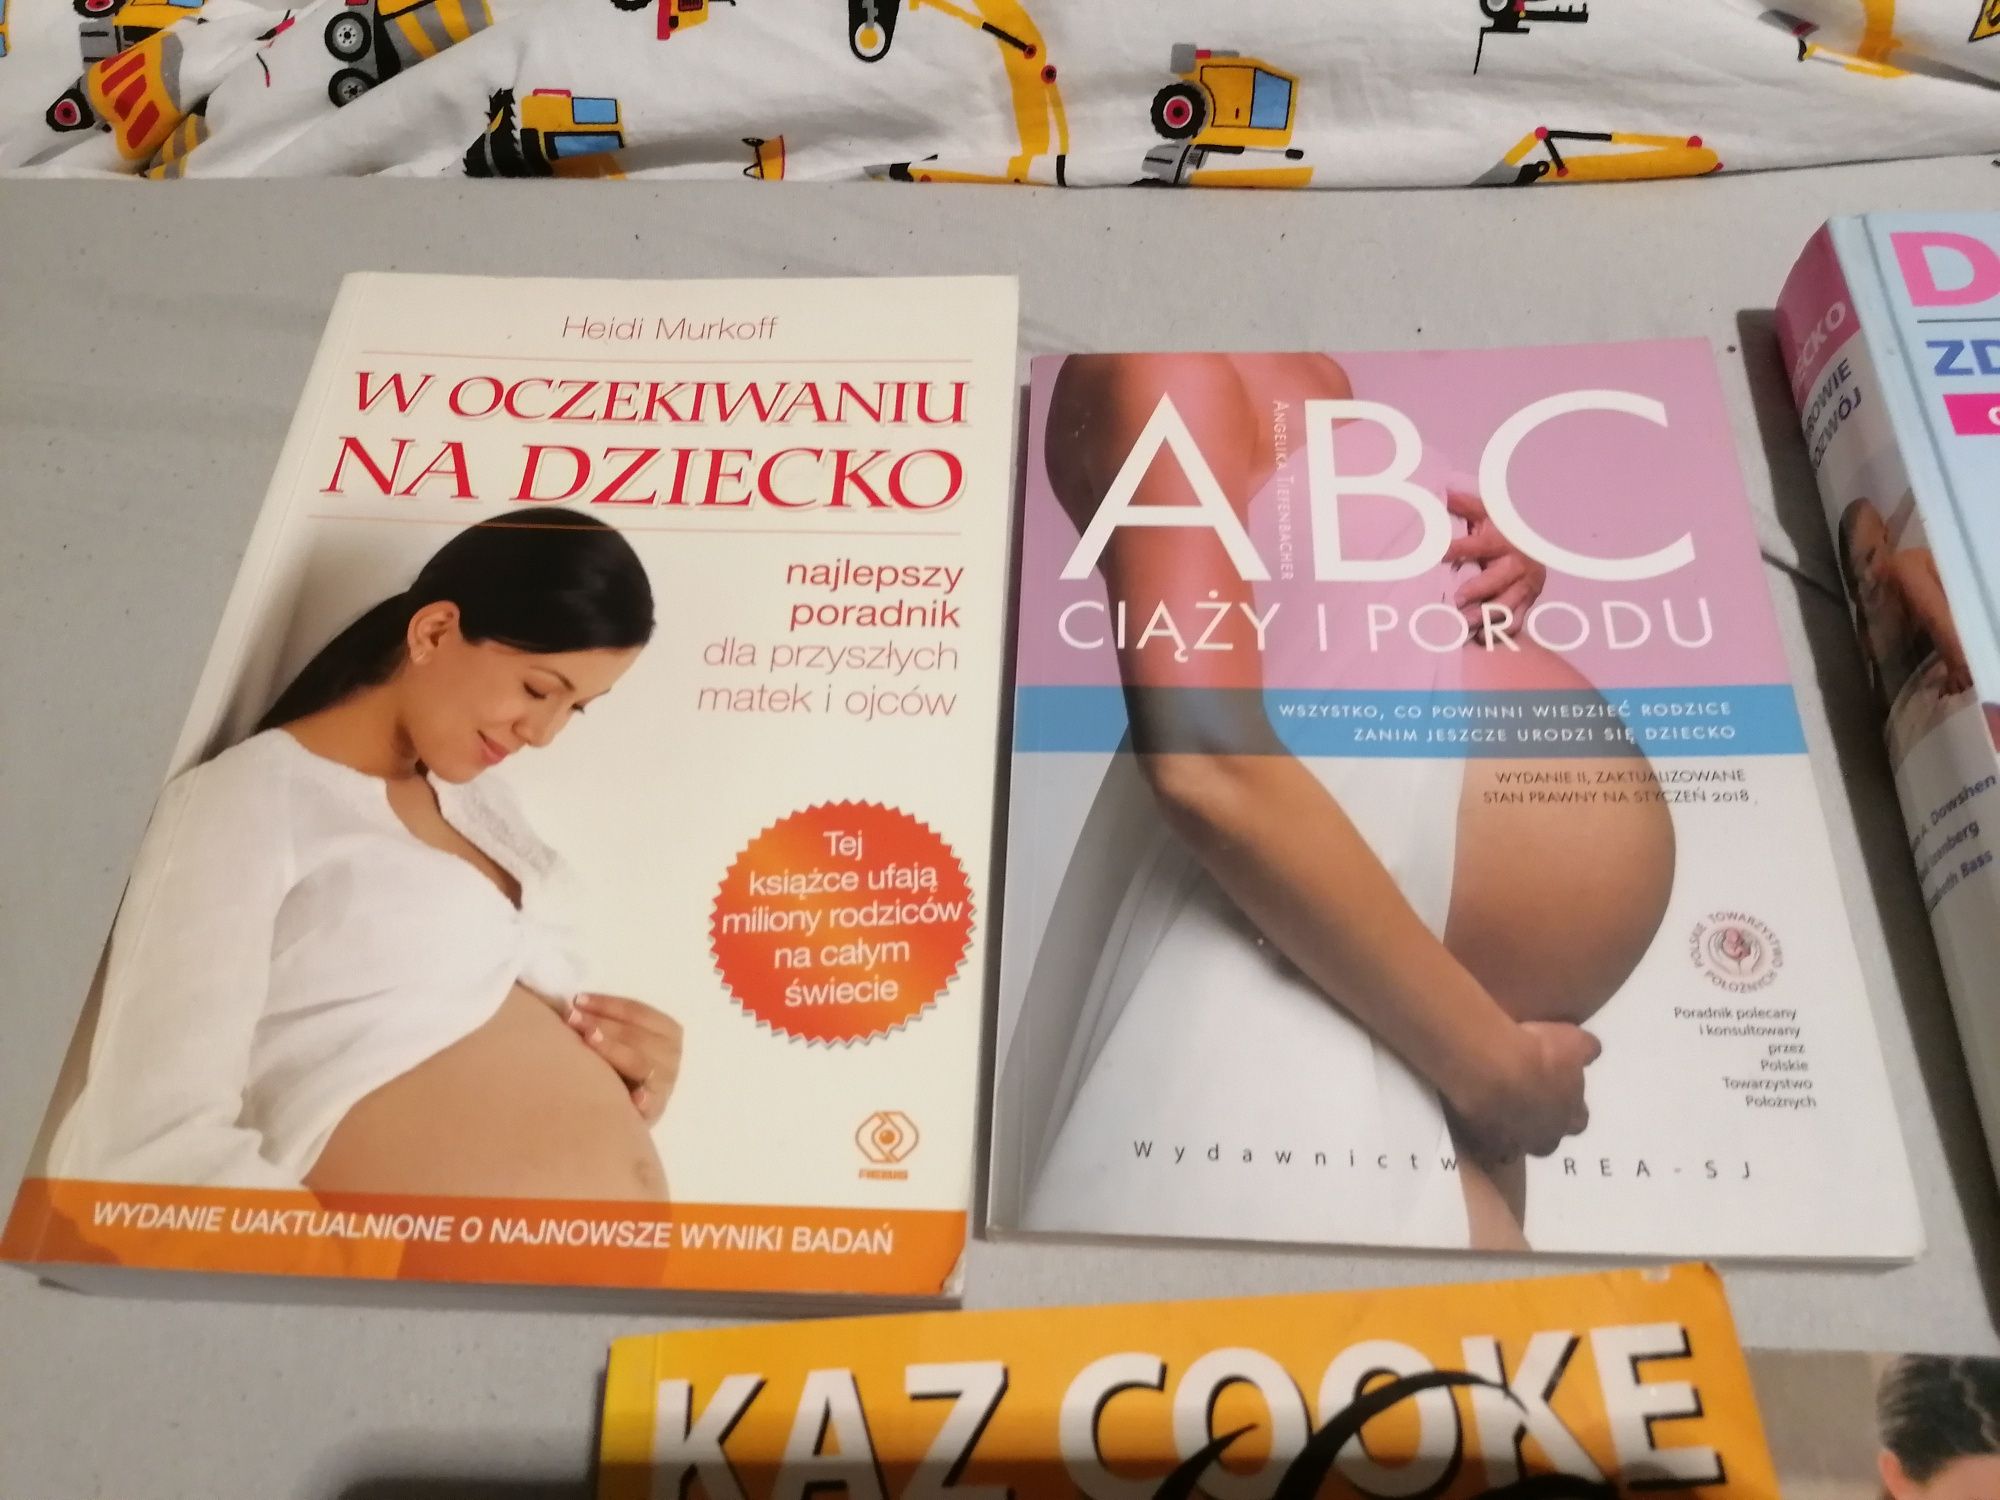 Książki abc ciąży i porodu, w oczekiwaniu na dziecko